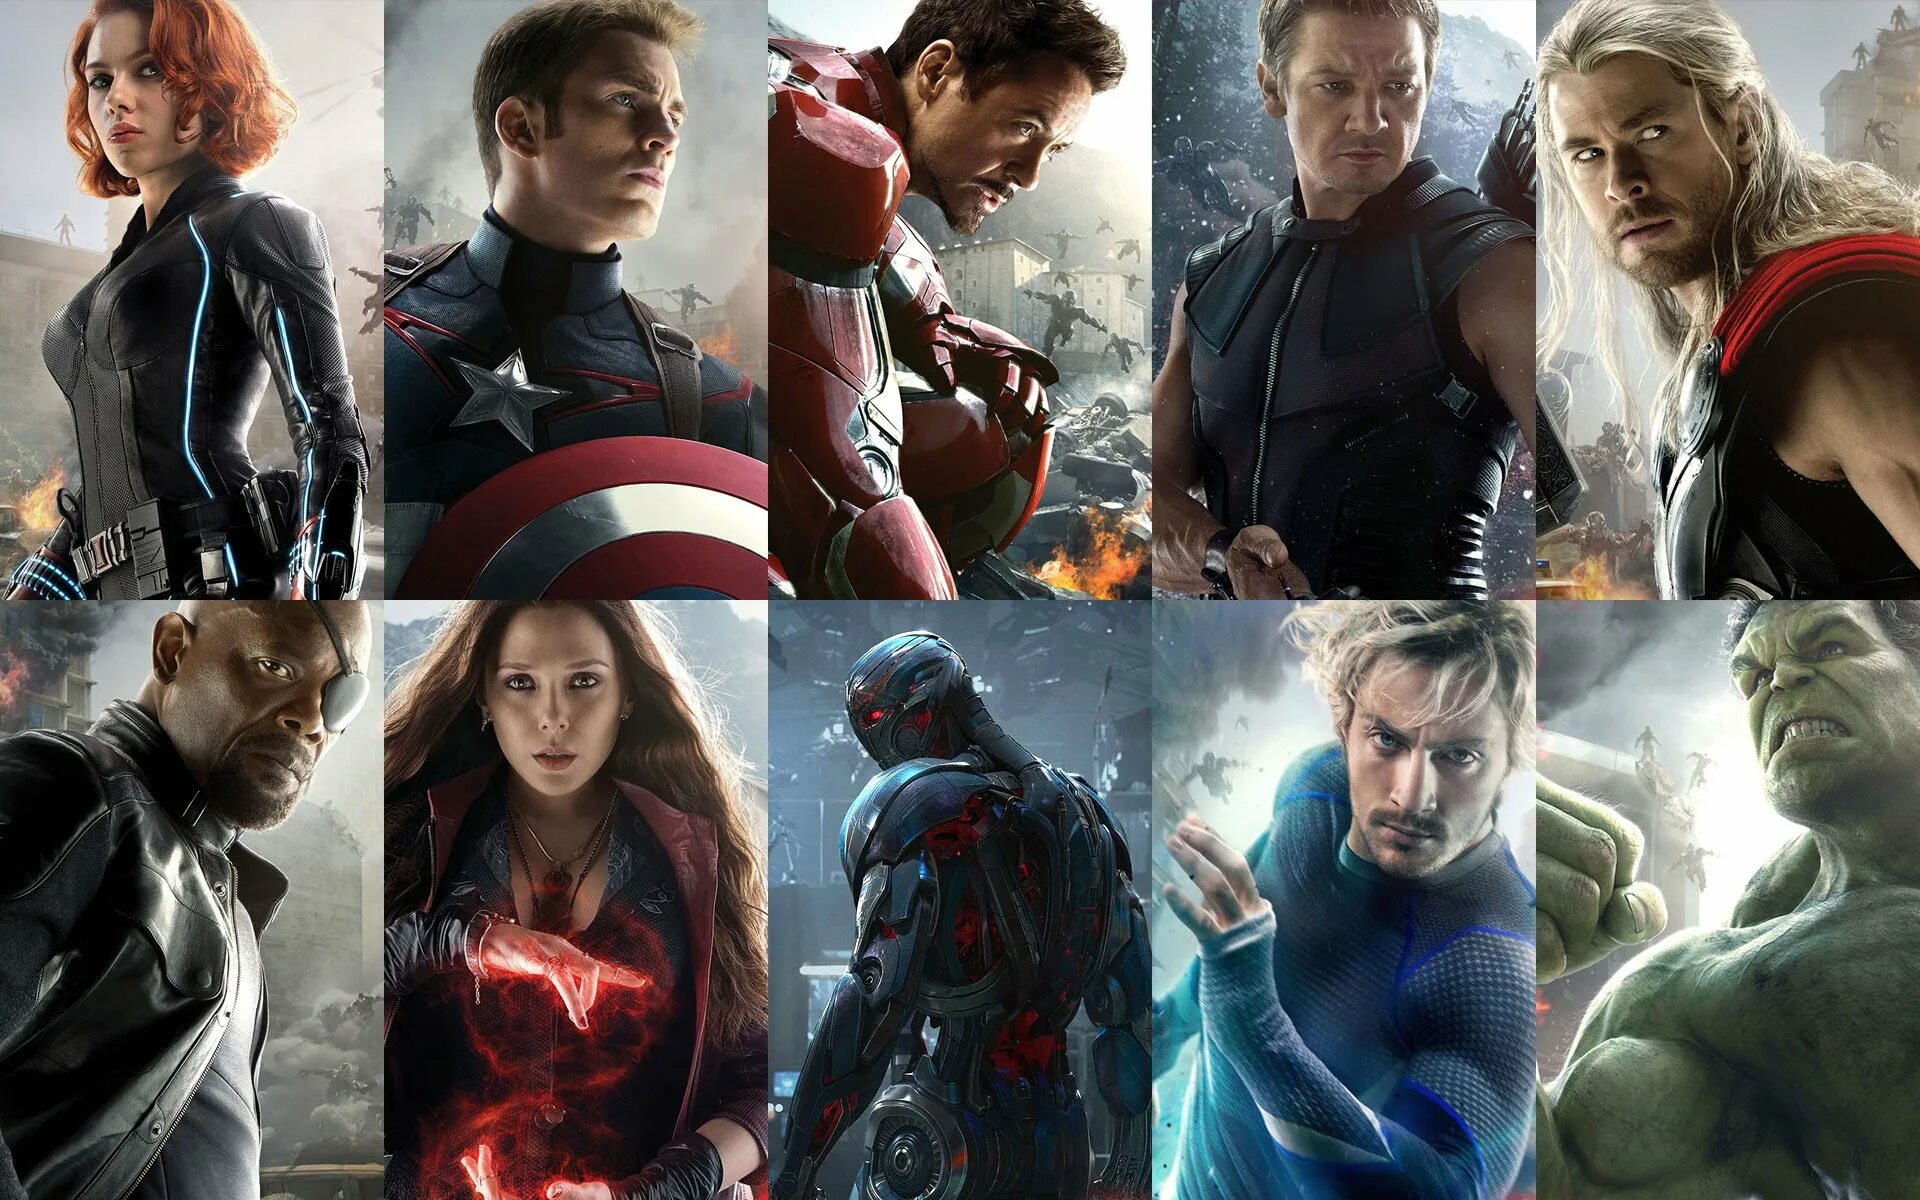 Мстители 2 Эра Альтрона. Мстители Марвел авенджерс. Стители: Эра Альтрона» (Avengers: age of Ultron, 2015). Эвенджерс Мстители герои.